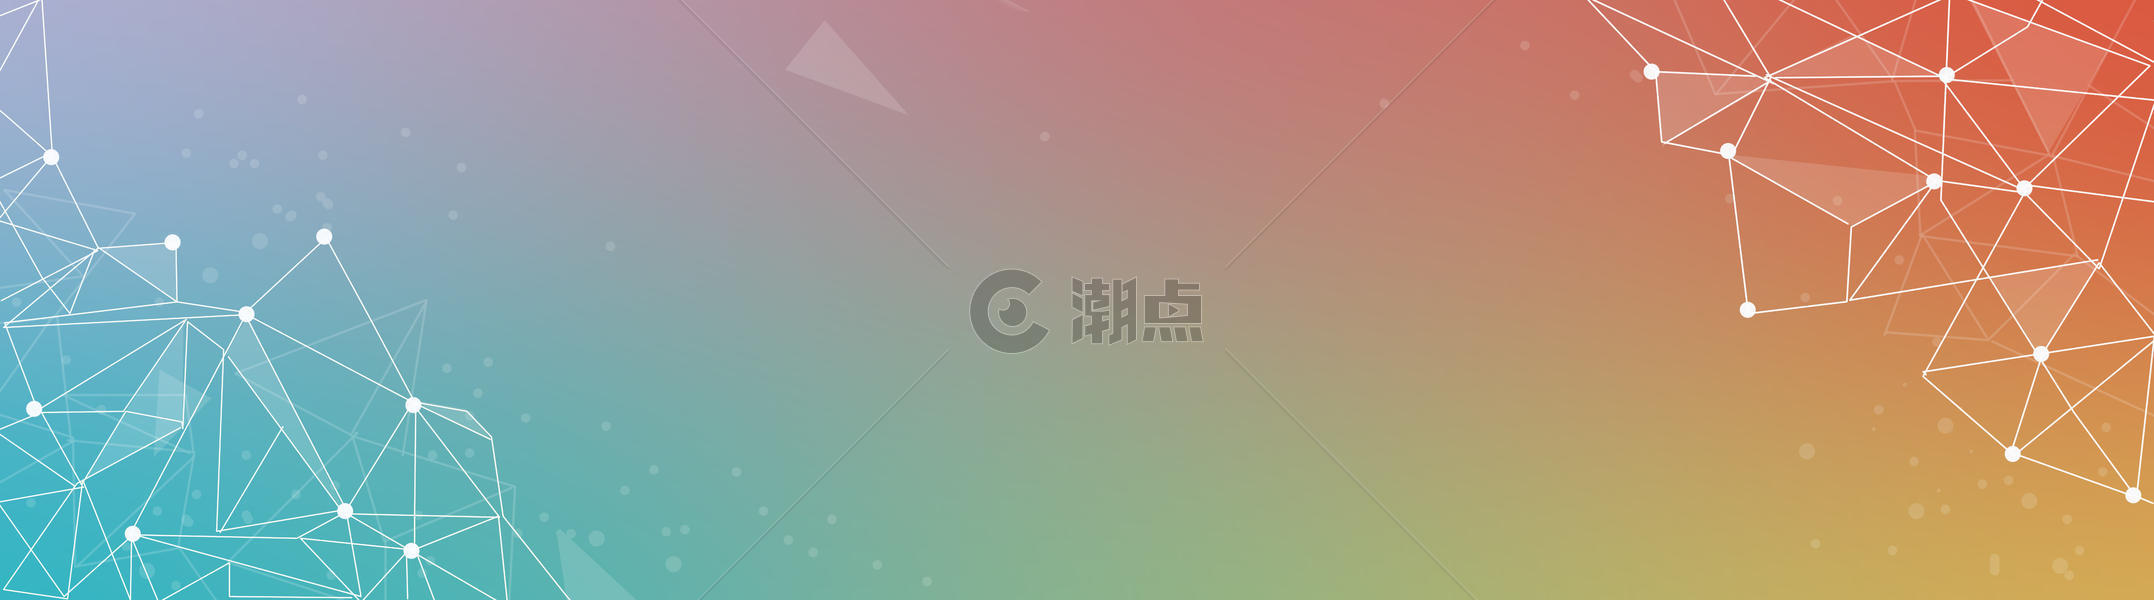 科技感线条彩虹背景banner图片素材免费下载